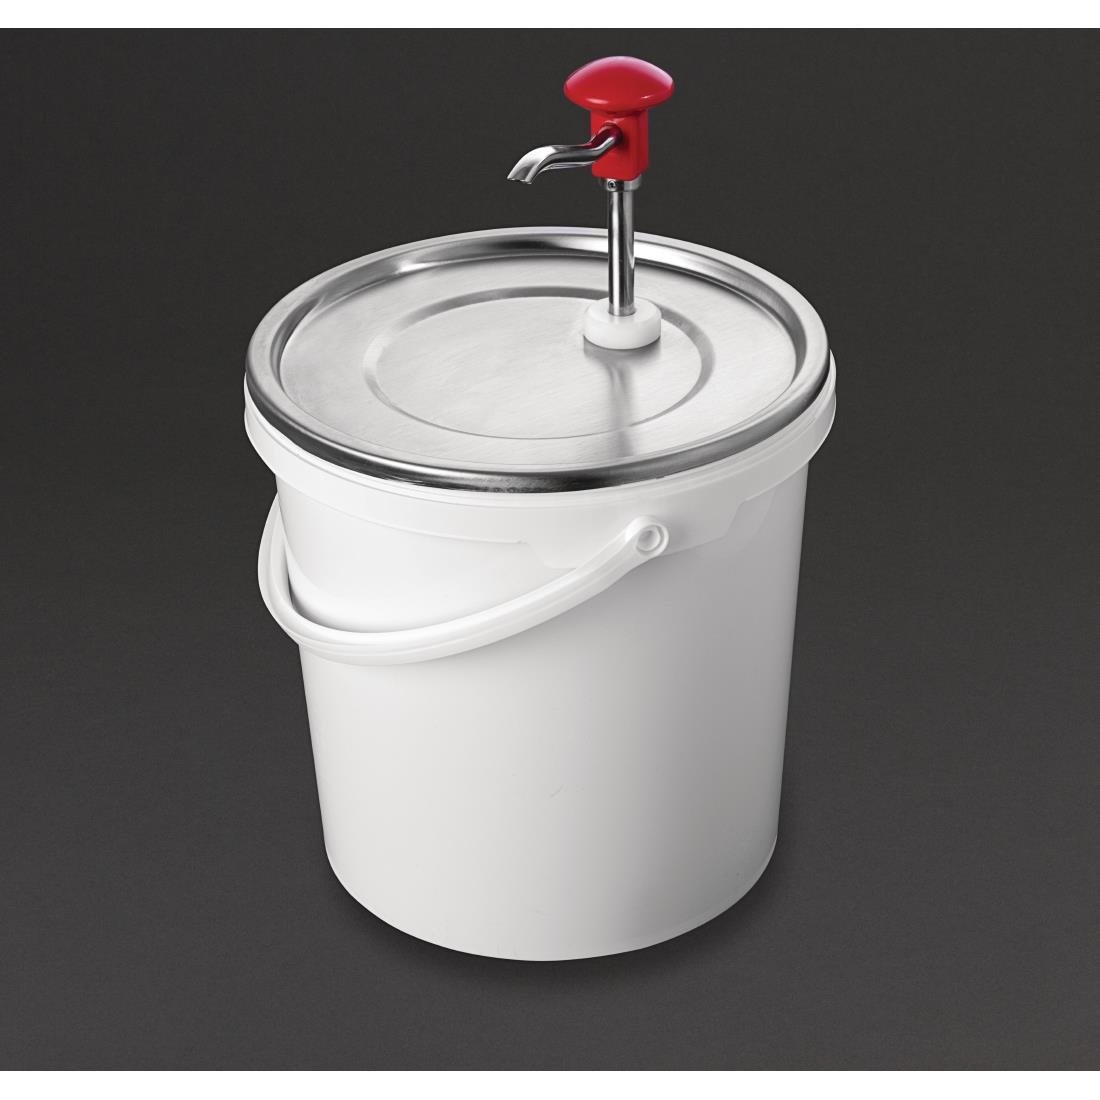 Soßenspender mit Pumpe | 10 Liter Behälter | Einstellbare Dosierung | Ø275x (H) 400 mm